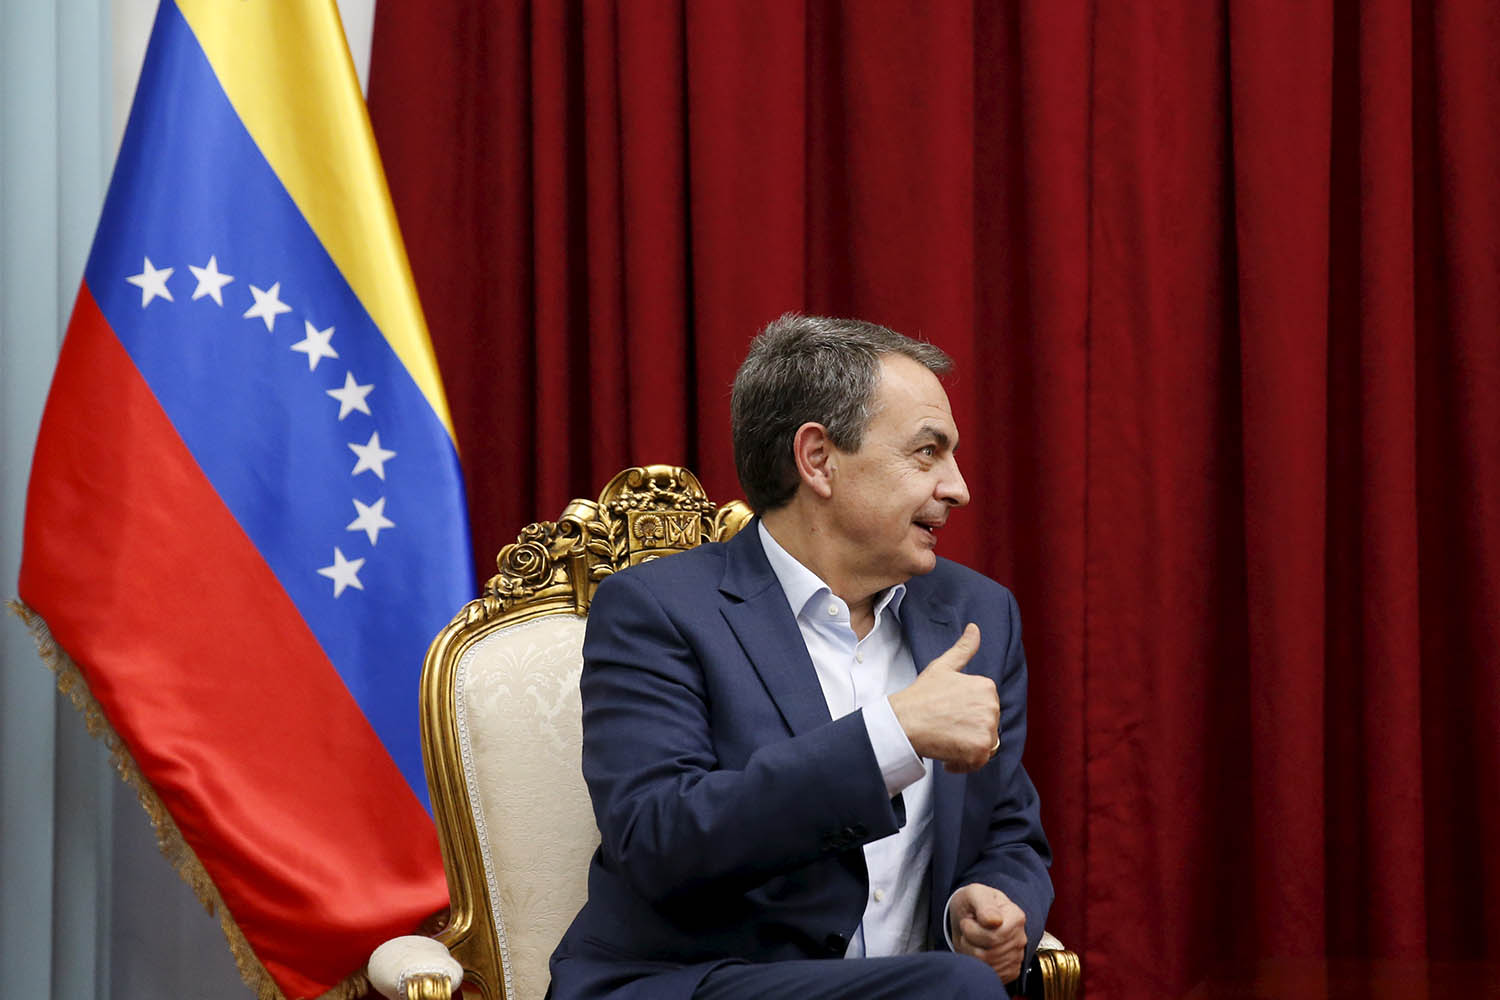 Capriles pide a Zapatero que explique para qué sirven sus viajes a Venezuela